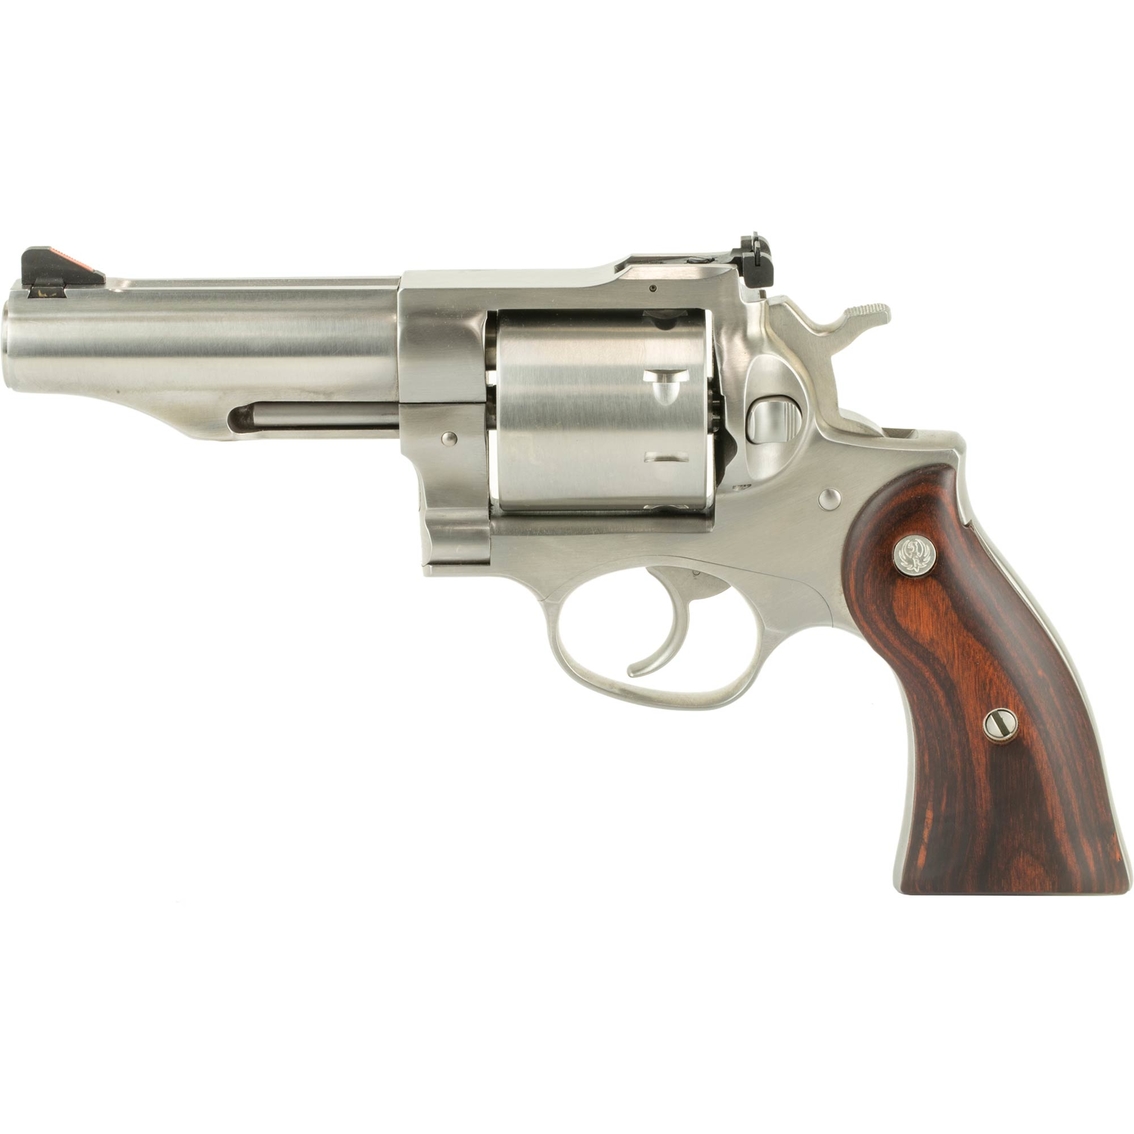 Ruger Redhawk 357 Mag 4.2 in. Barrel 8 Rnd Revolver Stainless Steel - Image 2 of 3